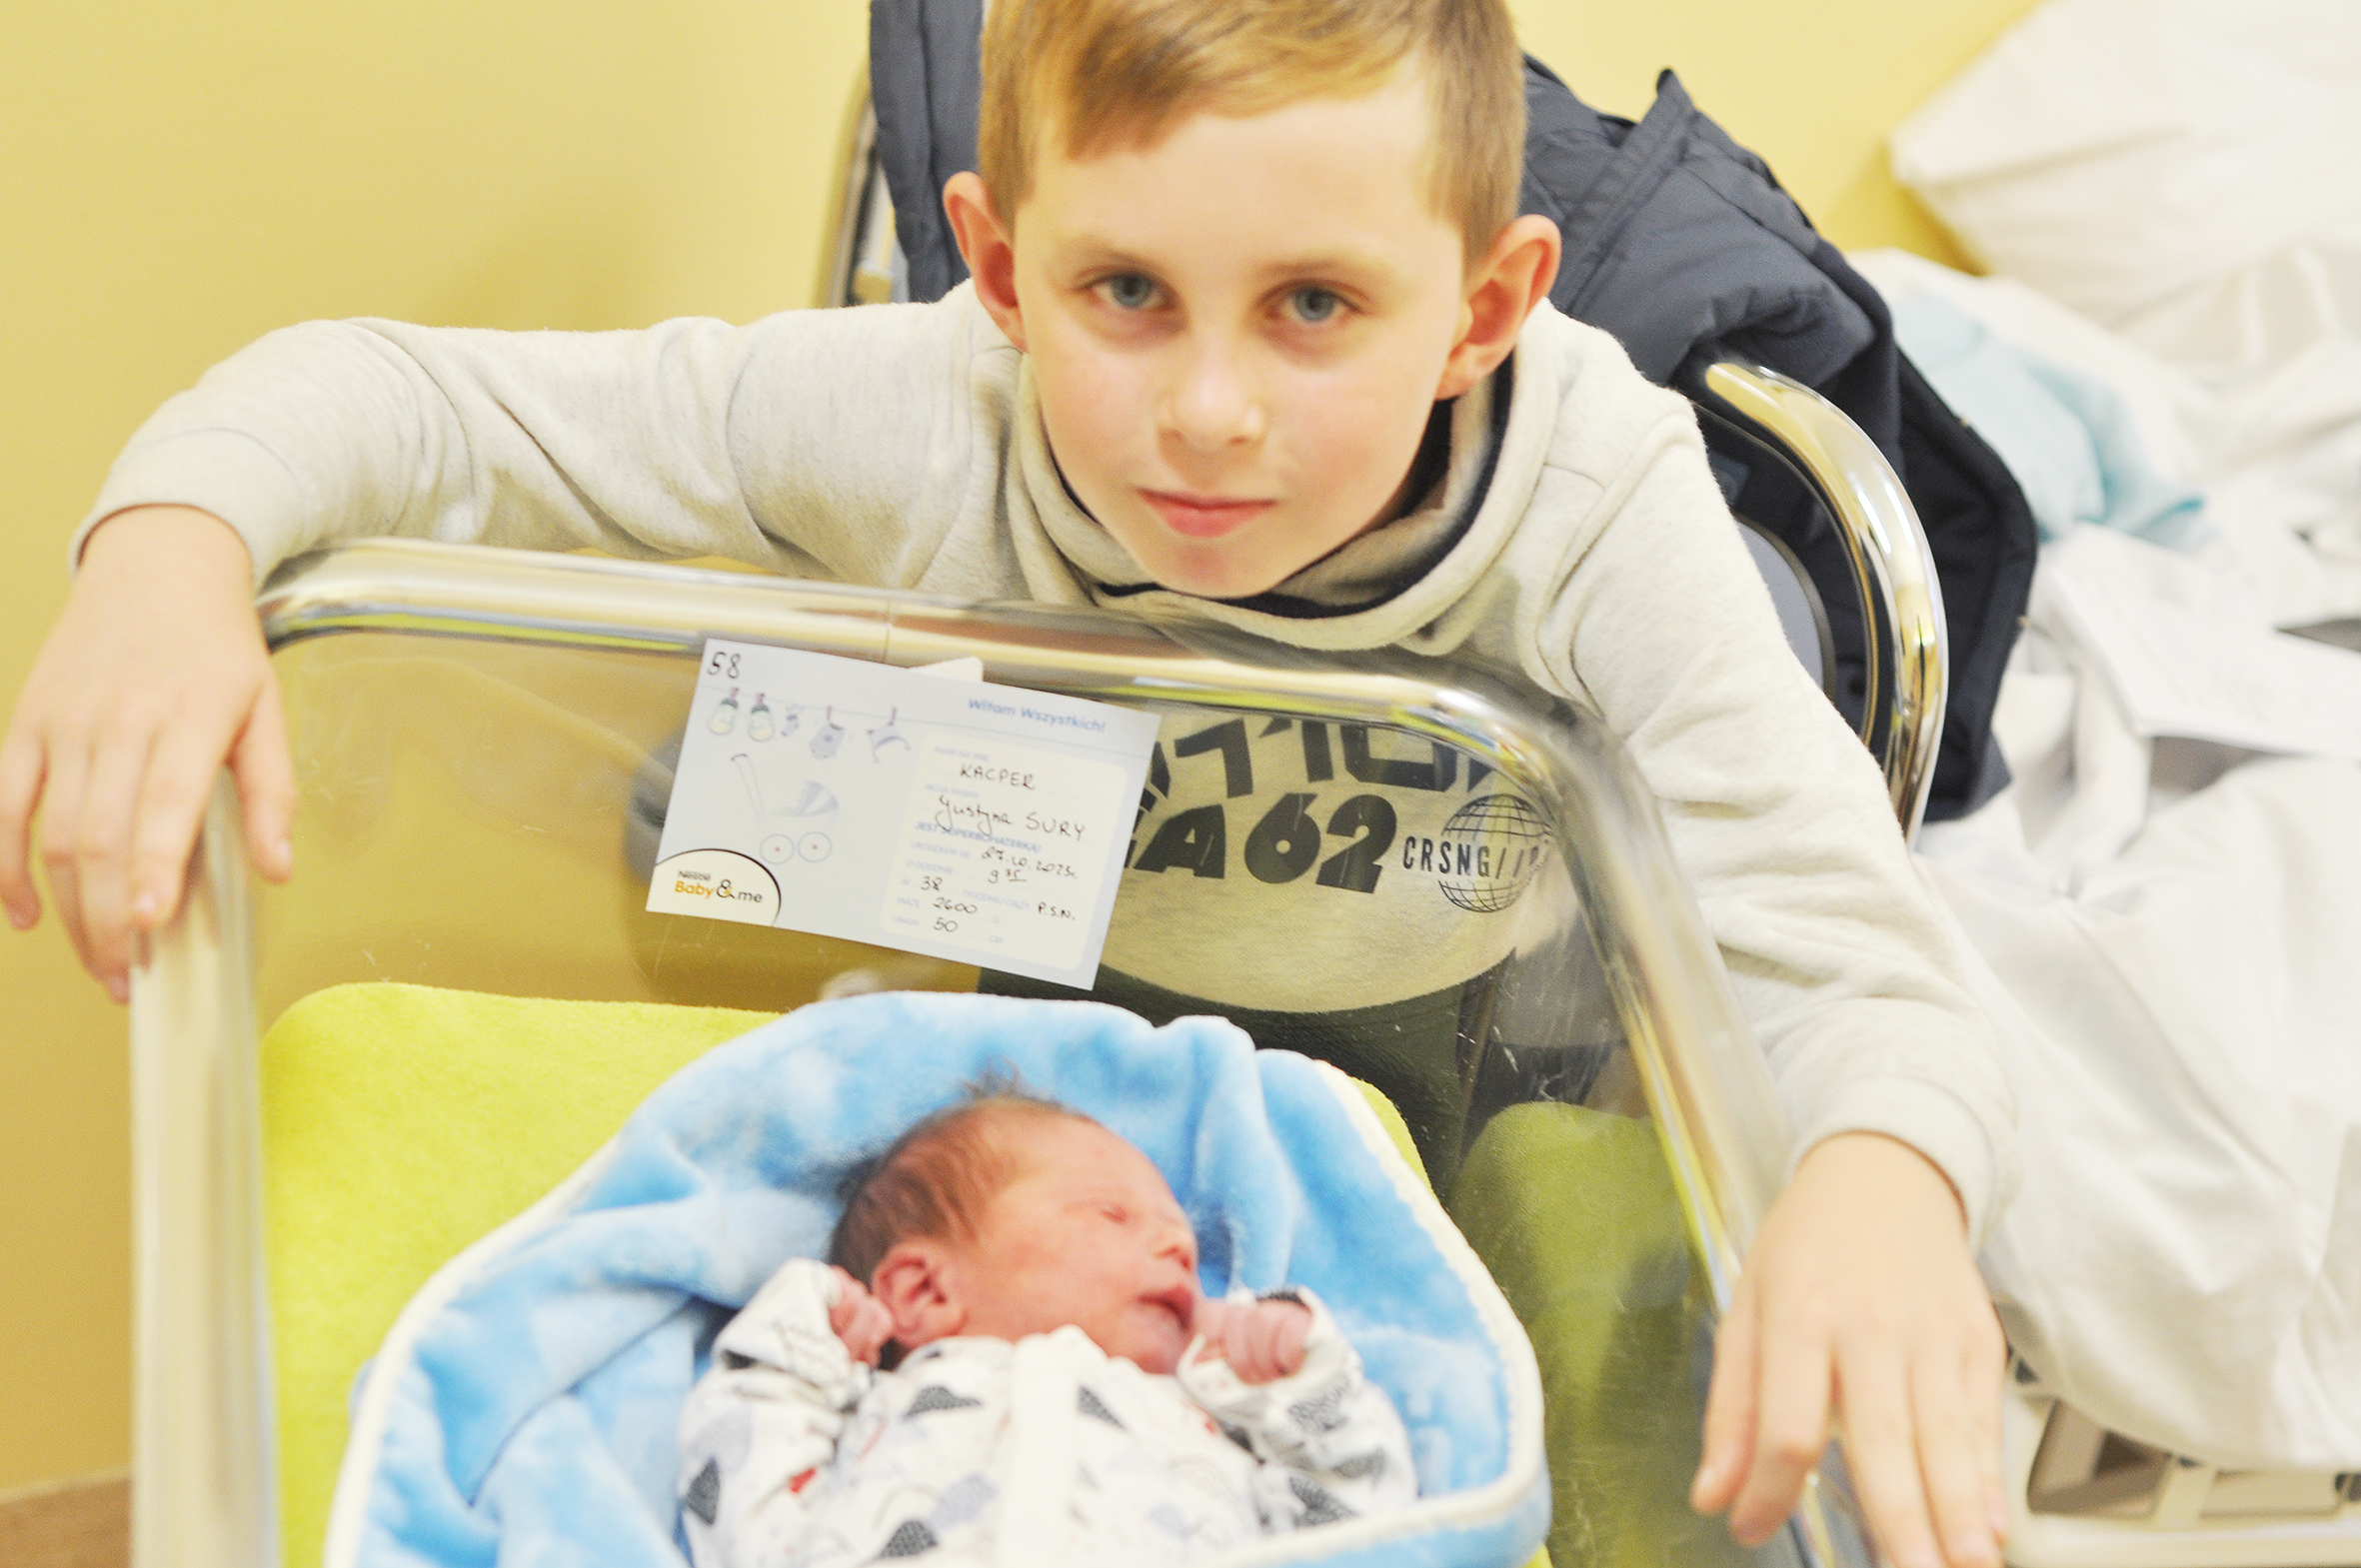 Kacper Sury jest synkiem Daniela i Justyny. Urodził się w Raciborzu 27 października o 9.35. Przy wadze 2600 g mierzył 50 cm. Chłopczyk ma brata Kevina (na zdjęciu). Rodzina mieszka w Rydułtowach.